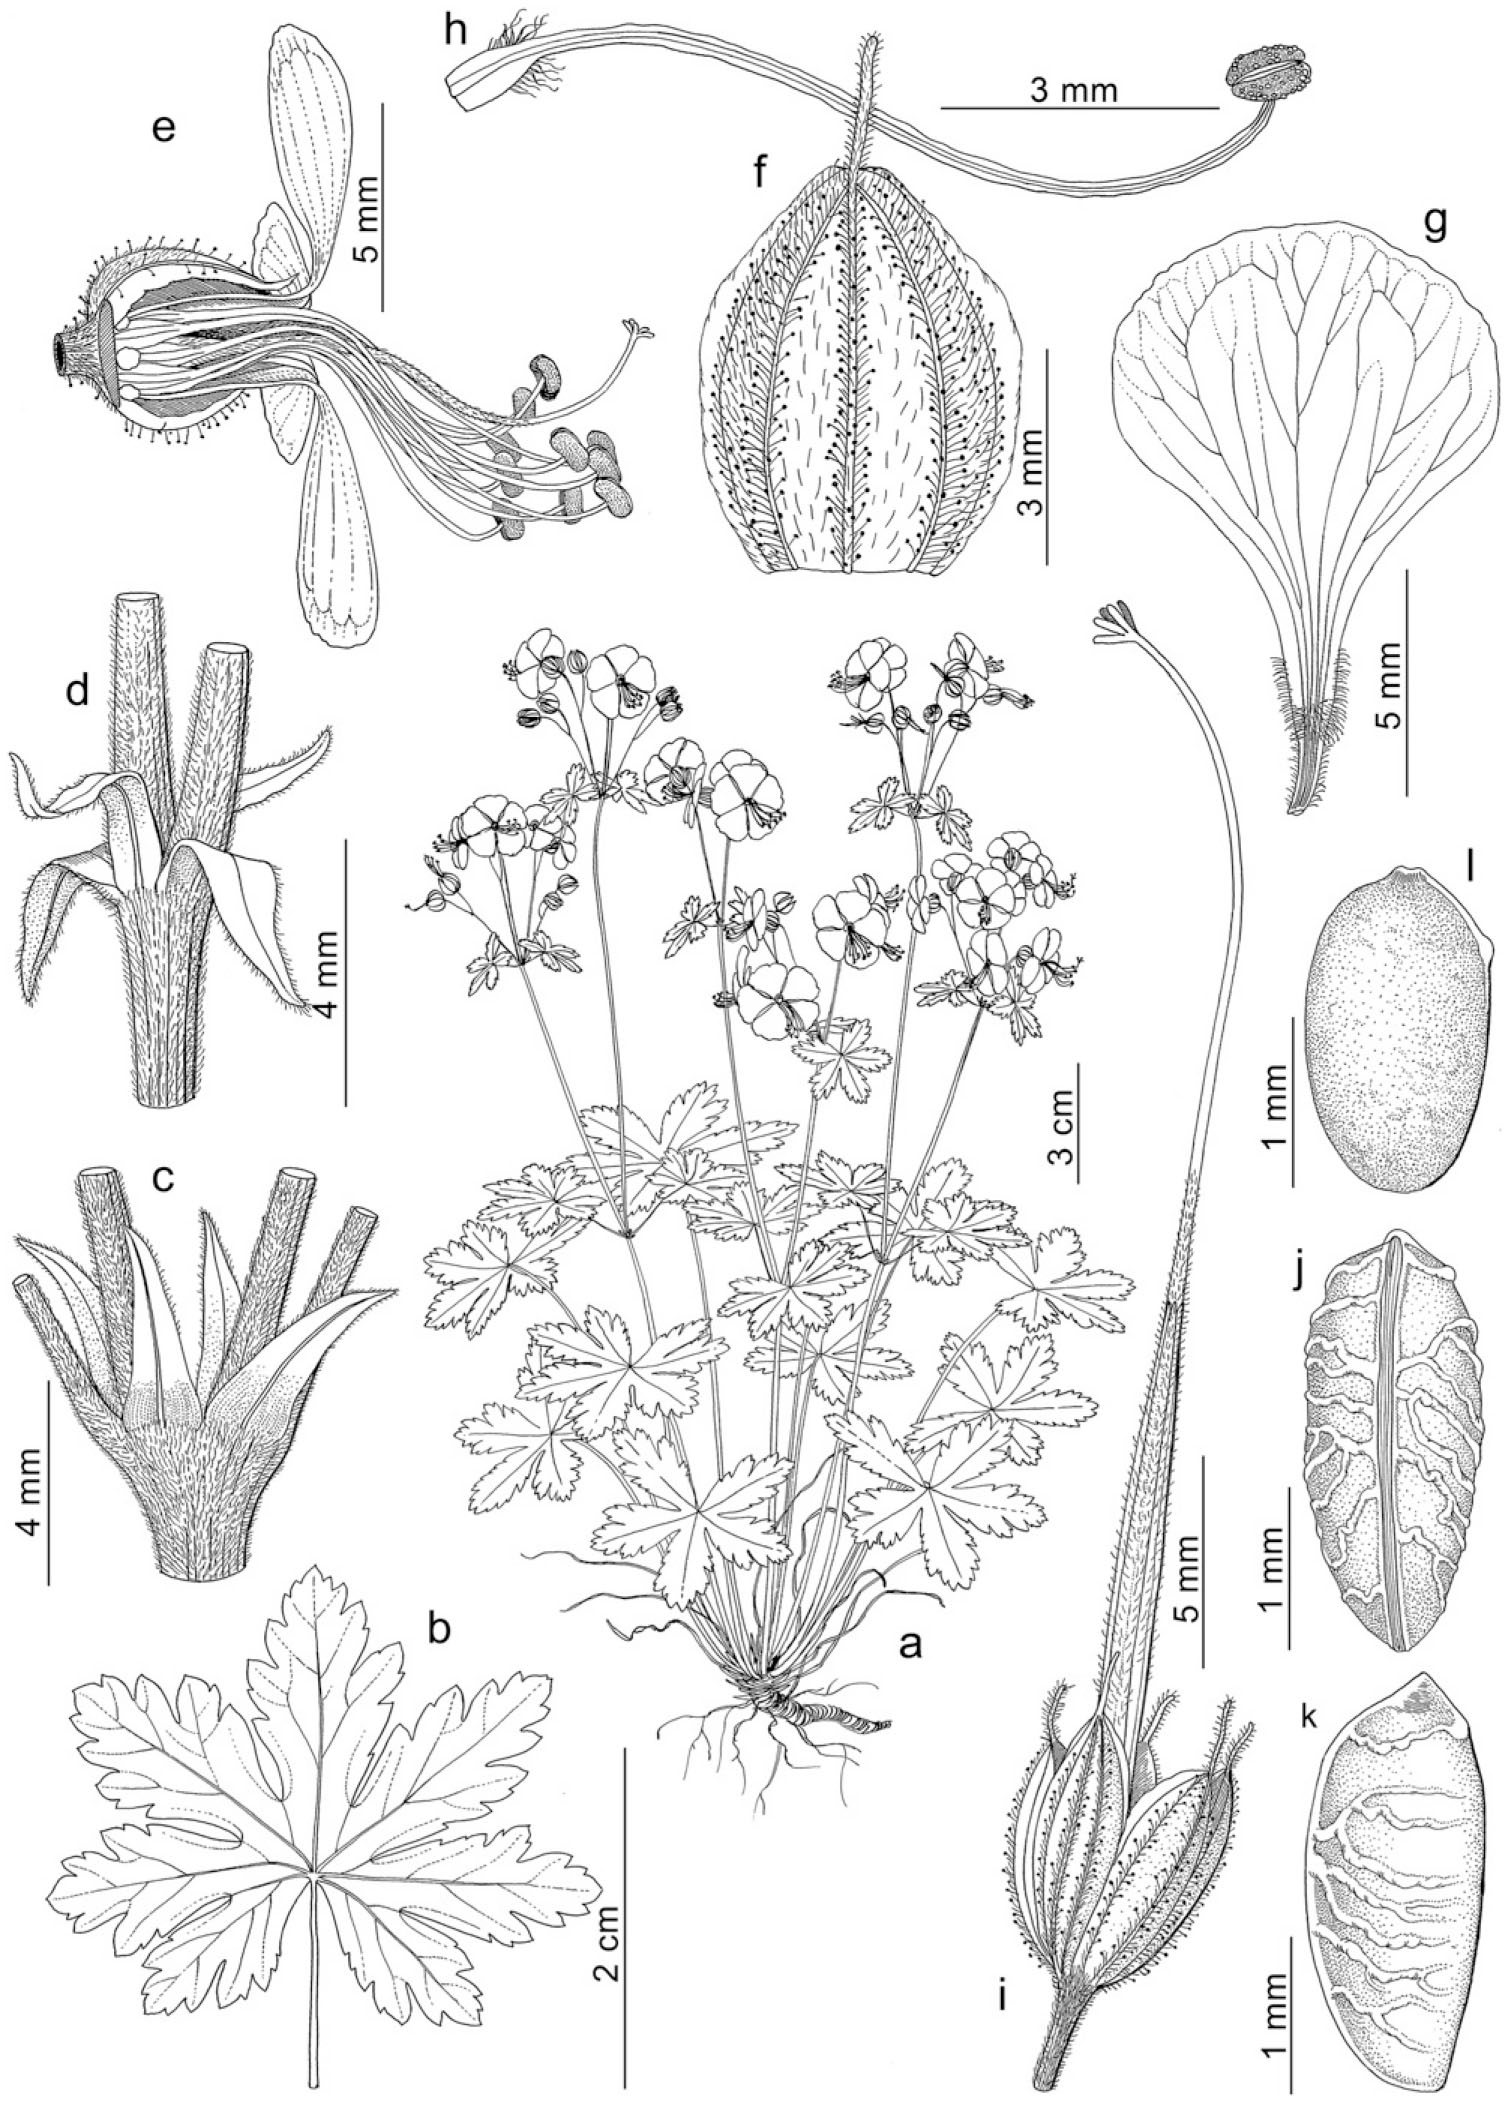 Taxonomic Revision Of Geranium Sect Ruberta And Unguiculata Geraniaceae 1